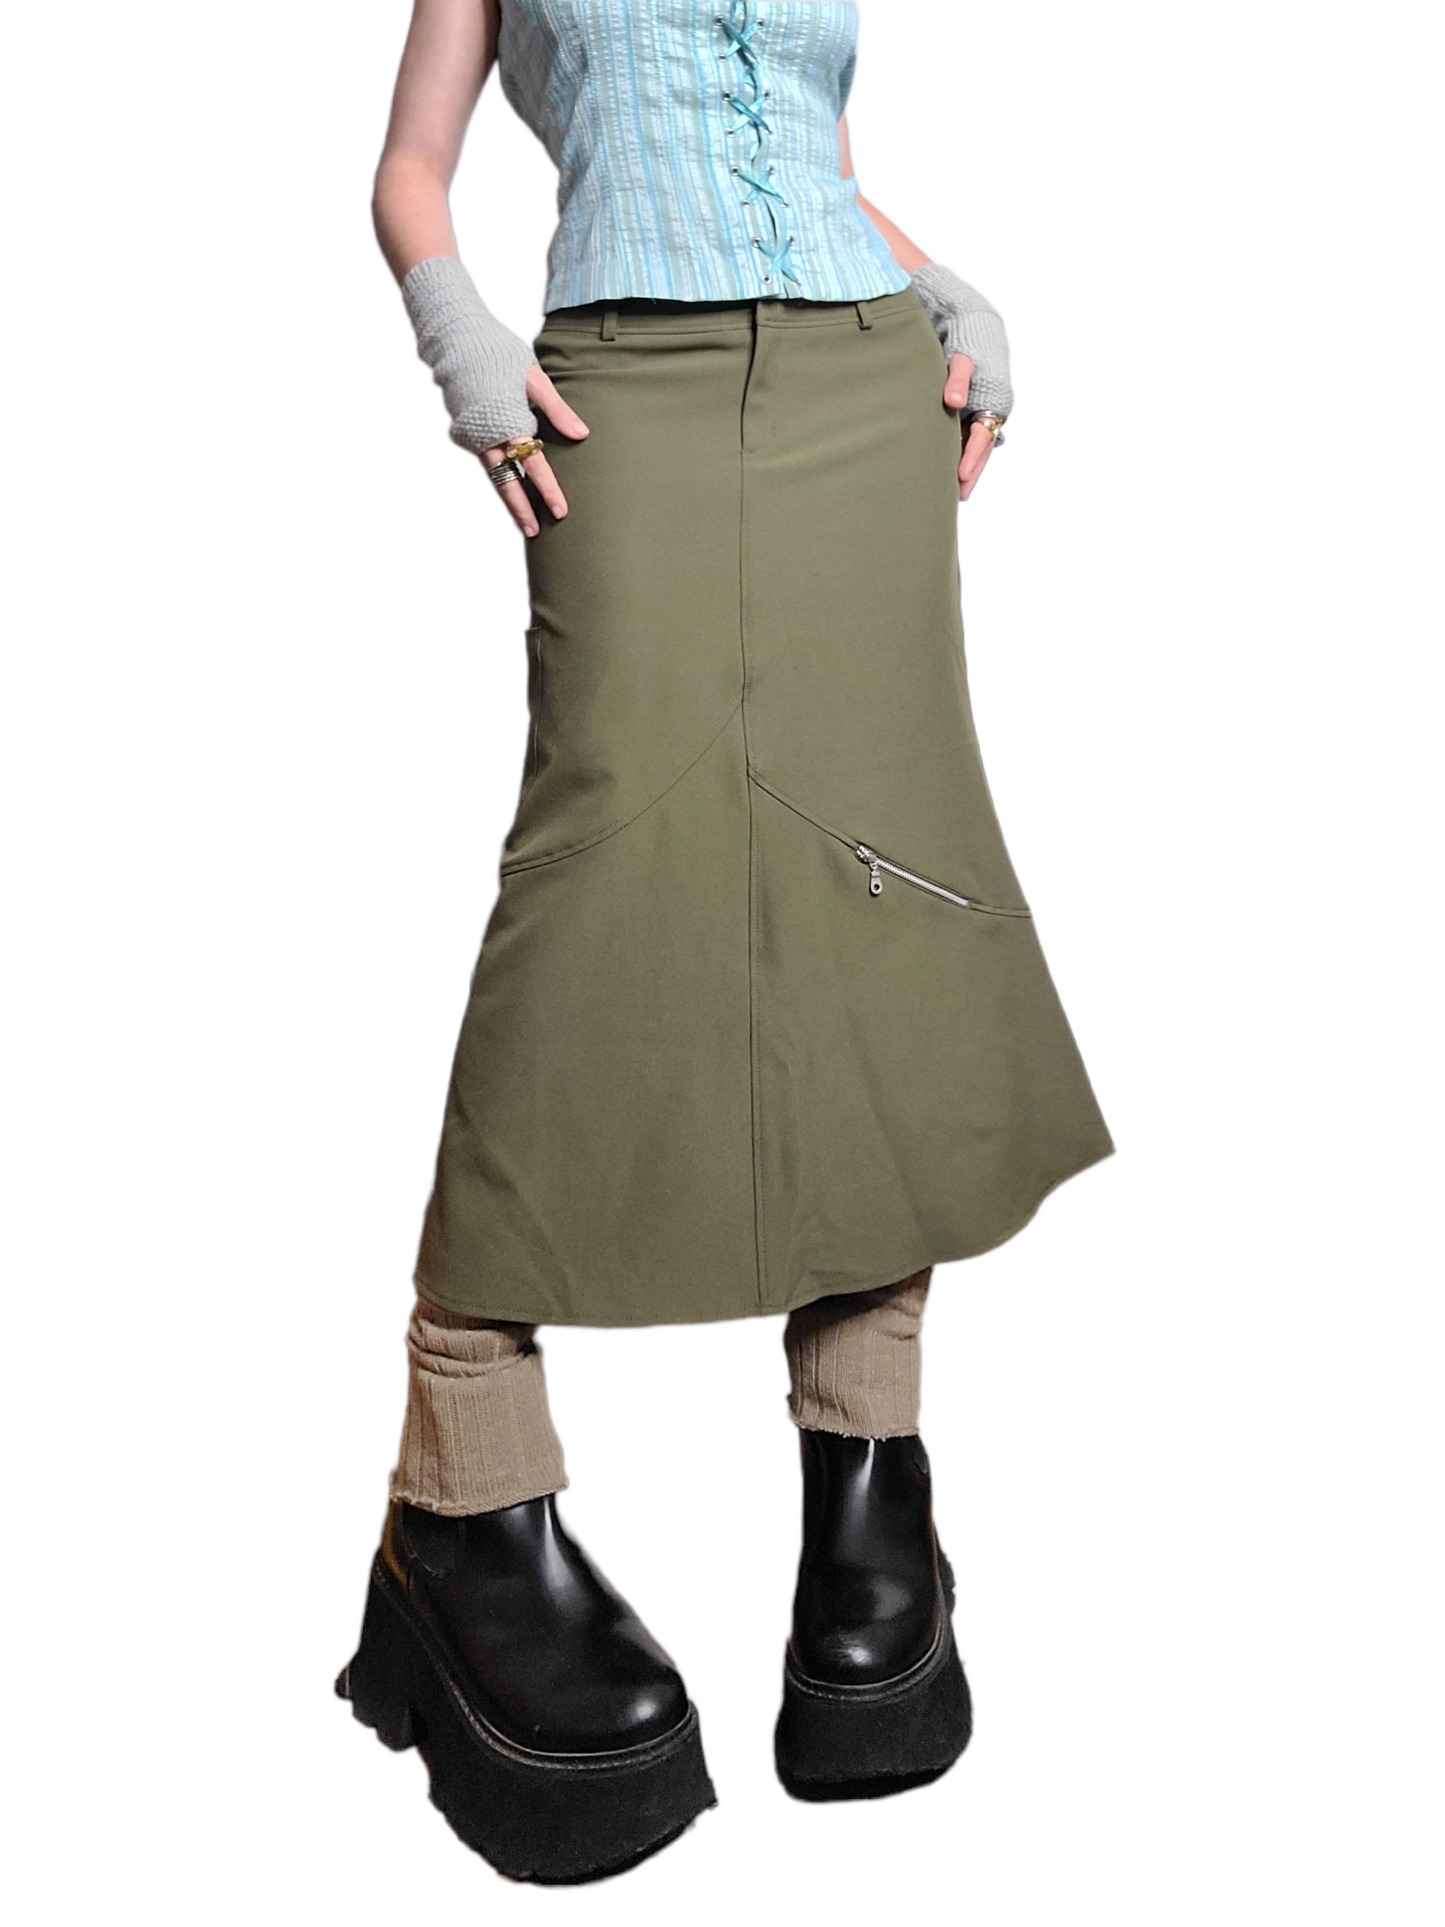 Maxi skirt kaki gorpcore y2k cybery2k vintage techwear 2000